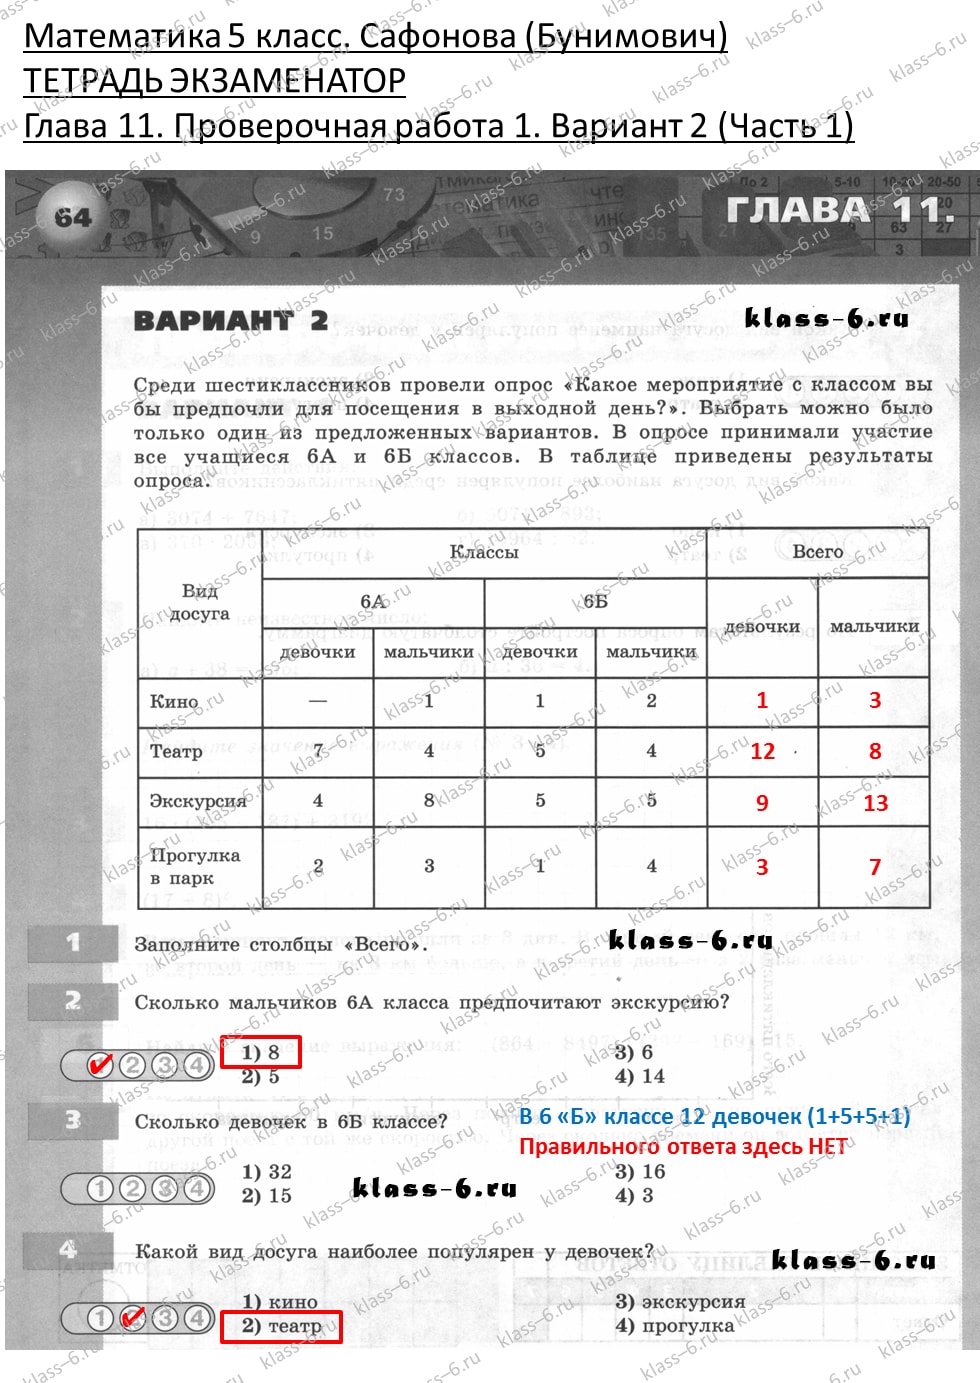 решебник и гдз по математике тетрадь экзаменатор Сафонова, Бунимович 5 класс глава 11 контрольная работа 1 вариант 2 (1)